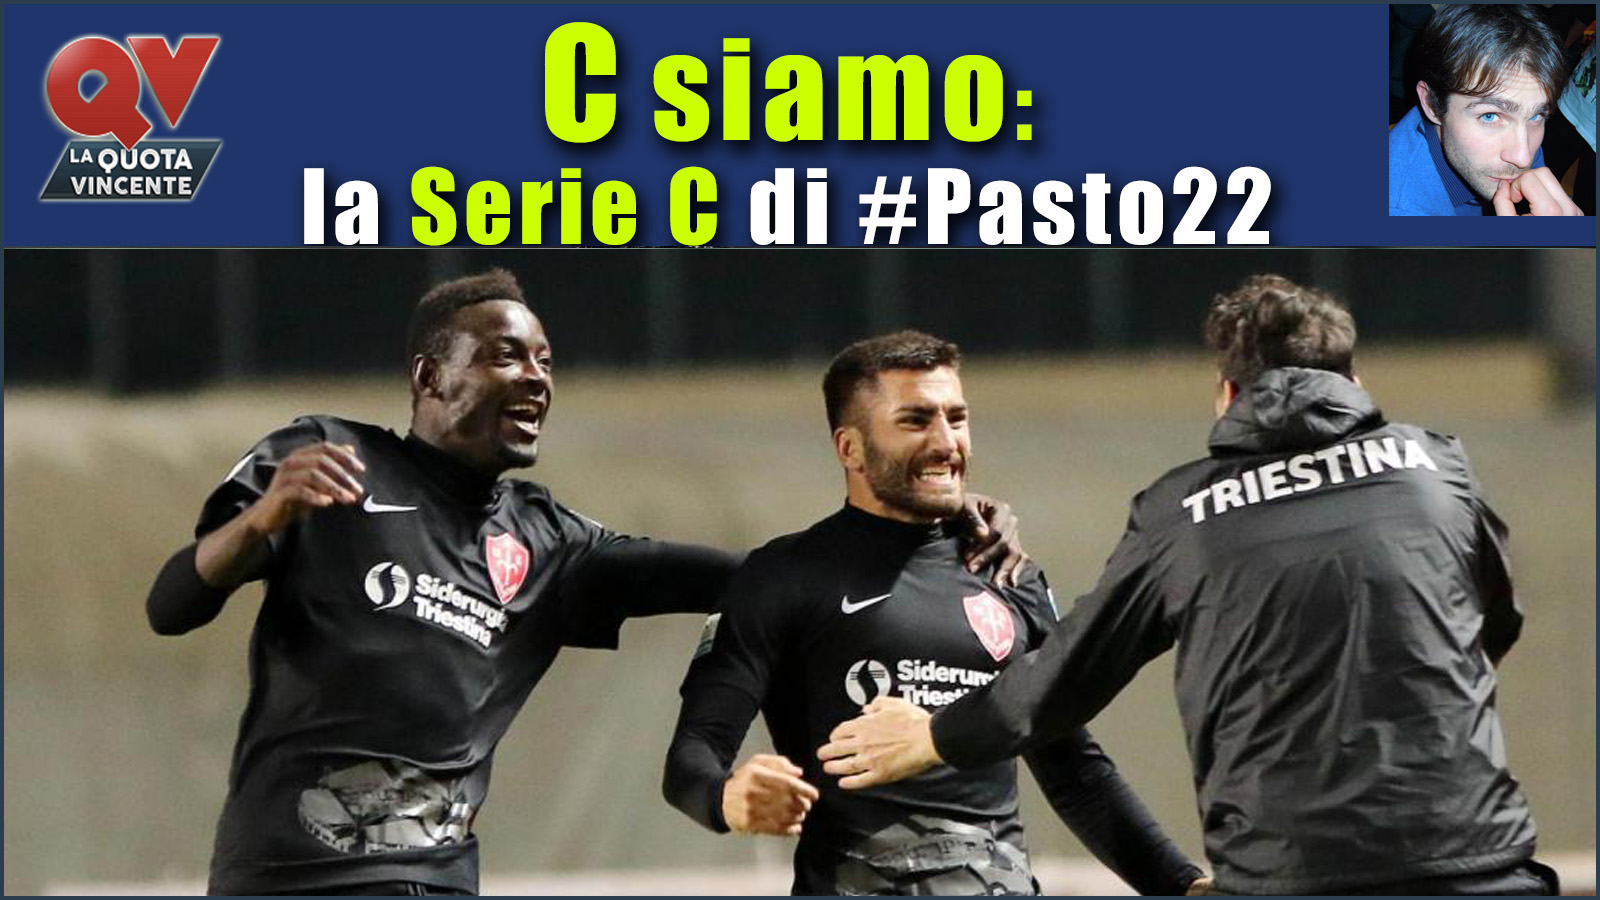 Pronostici Serie C domenica 26 novembre: #Csiamo, il blog di #Pasto22